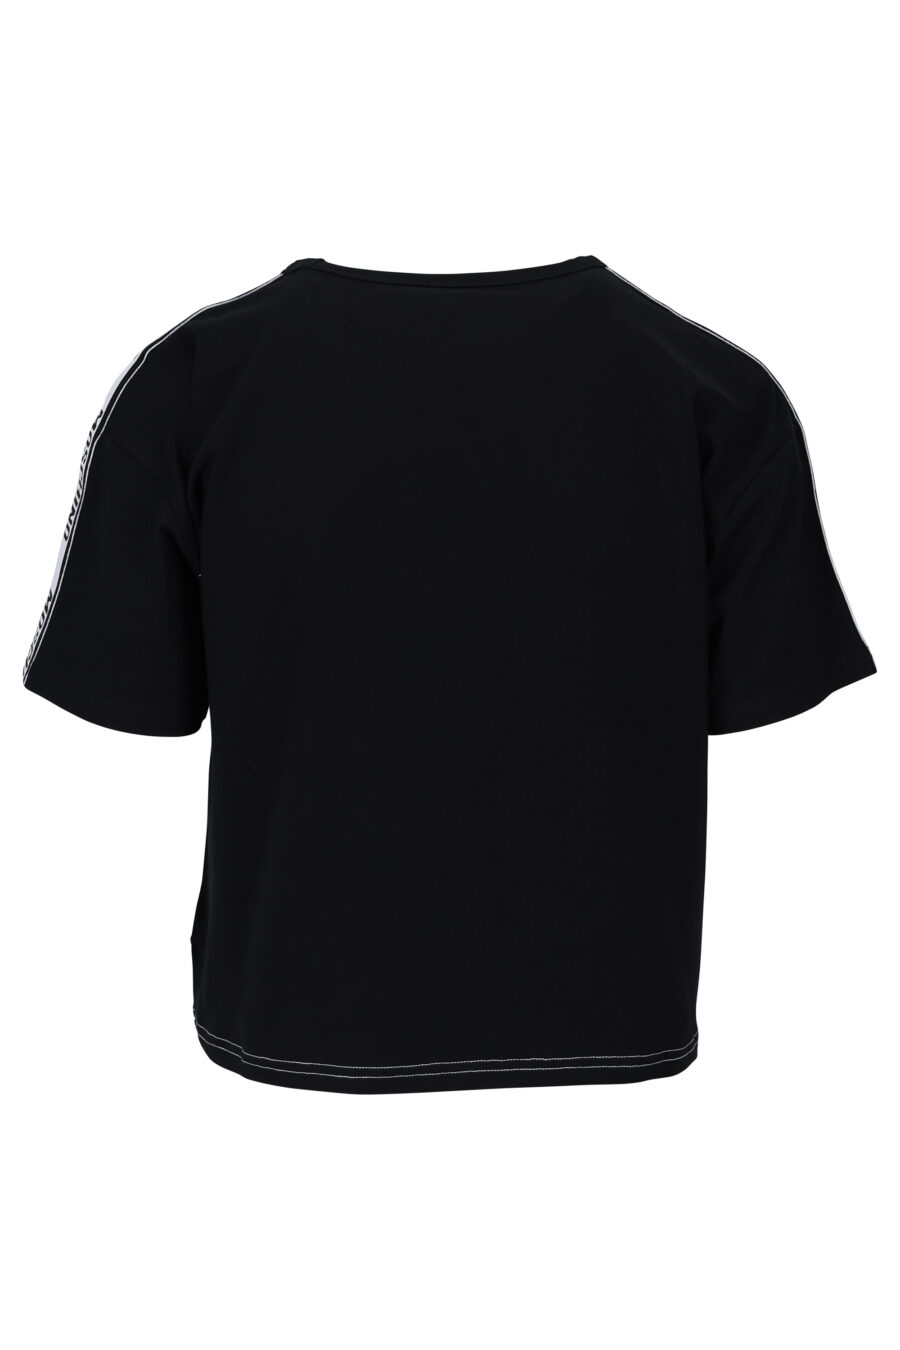 Camiseta blanca de mangas y espalda negra y logo en cinta - 667113062037 1